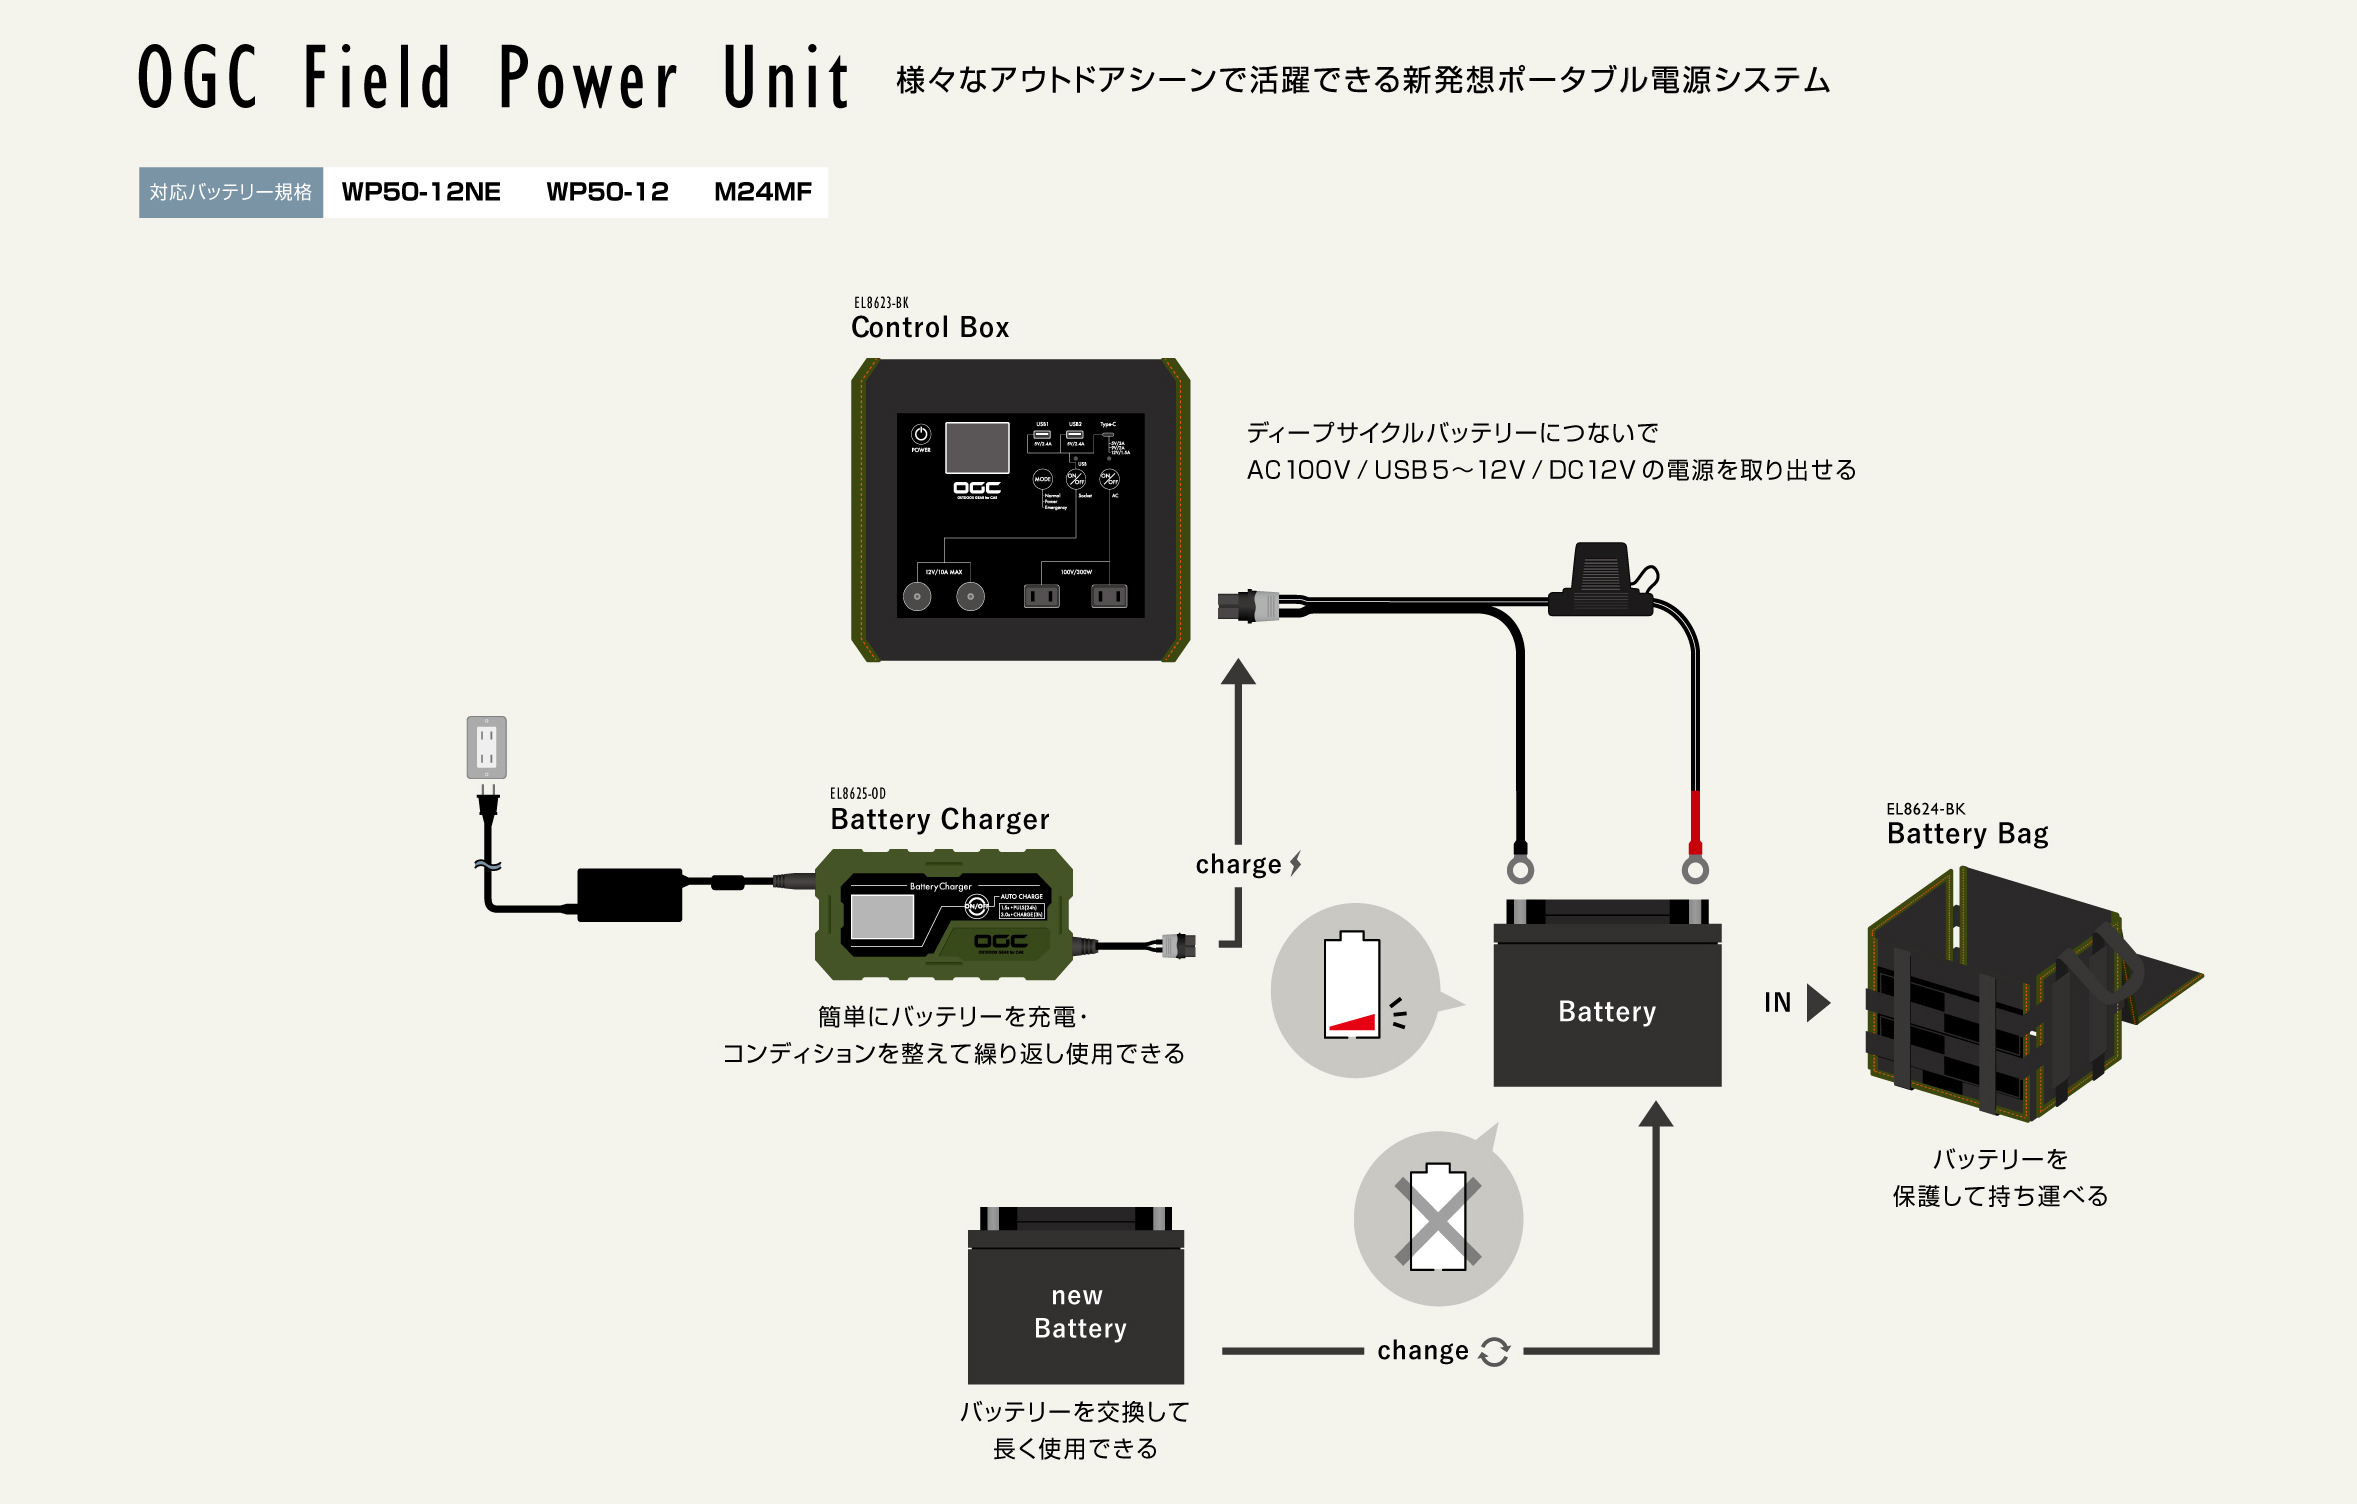 OGCフィールドパワーユニットは様々なアウトドアシーンで活躍できる新発想ポータブル電源システムです